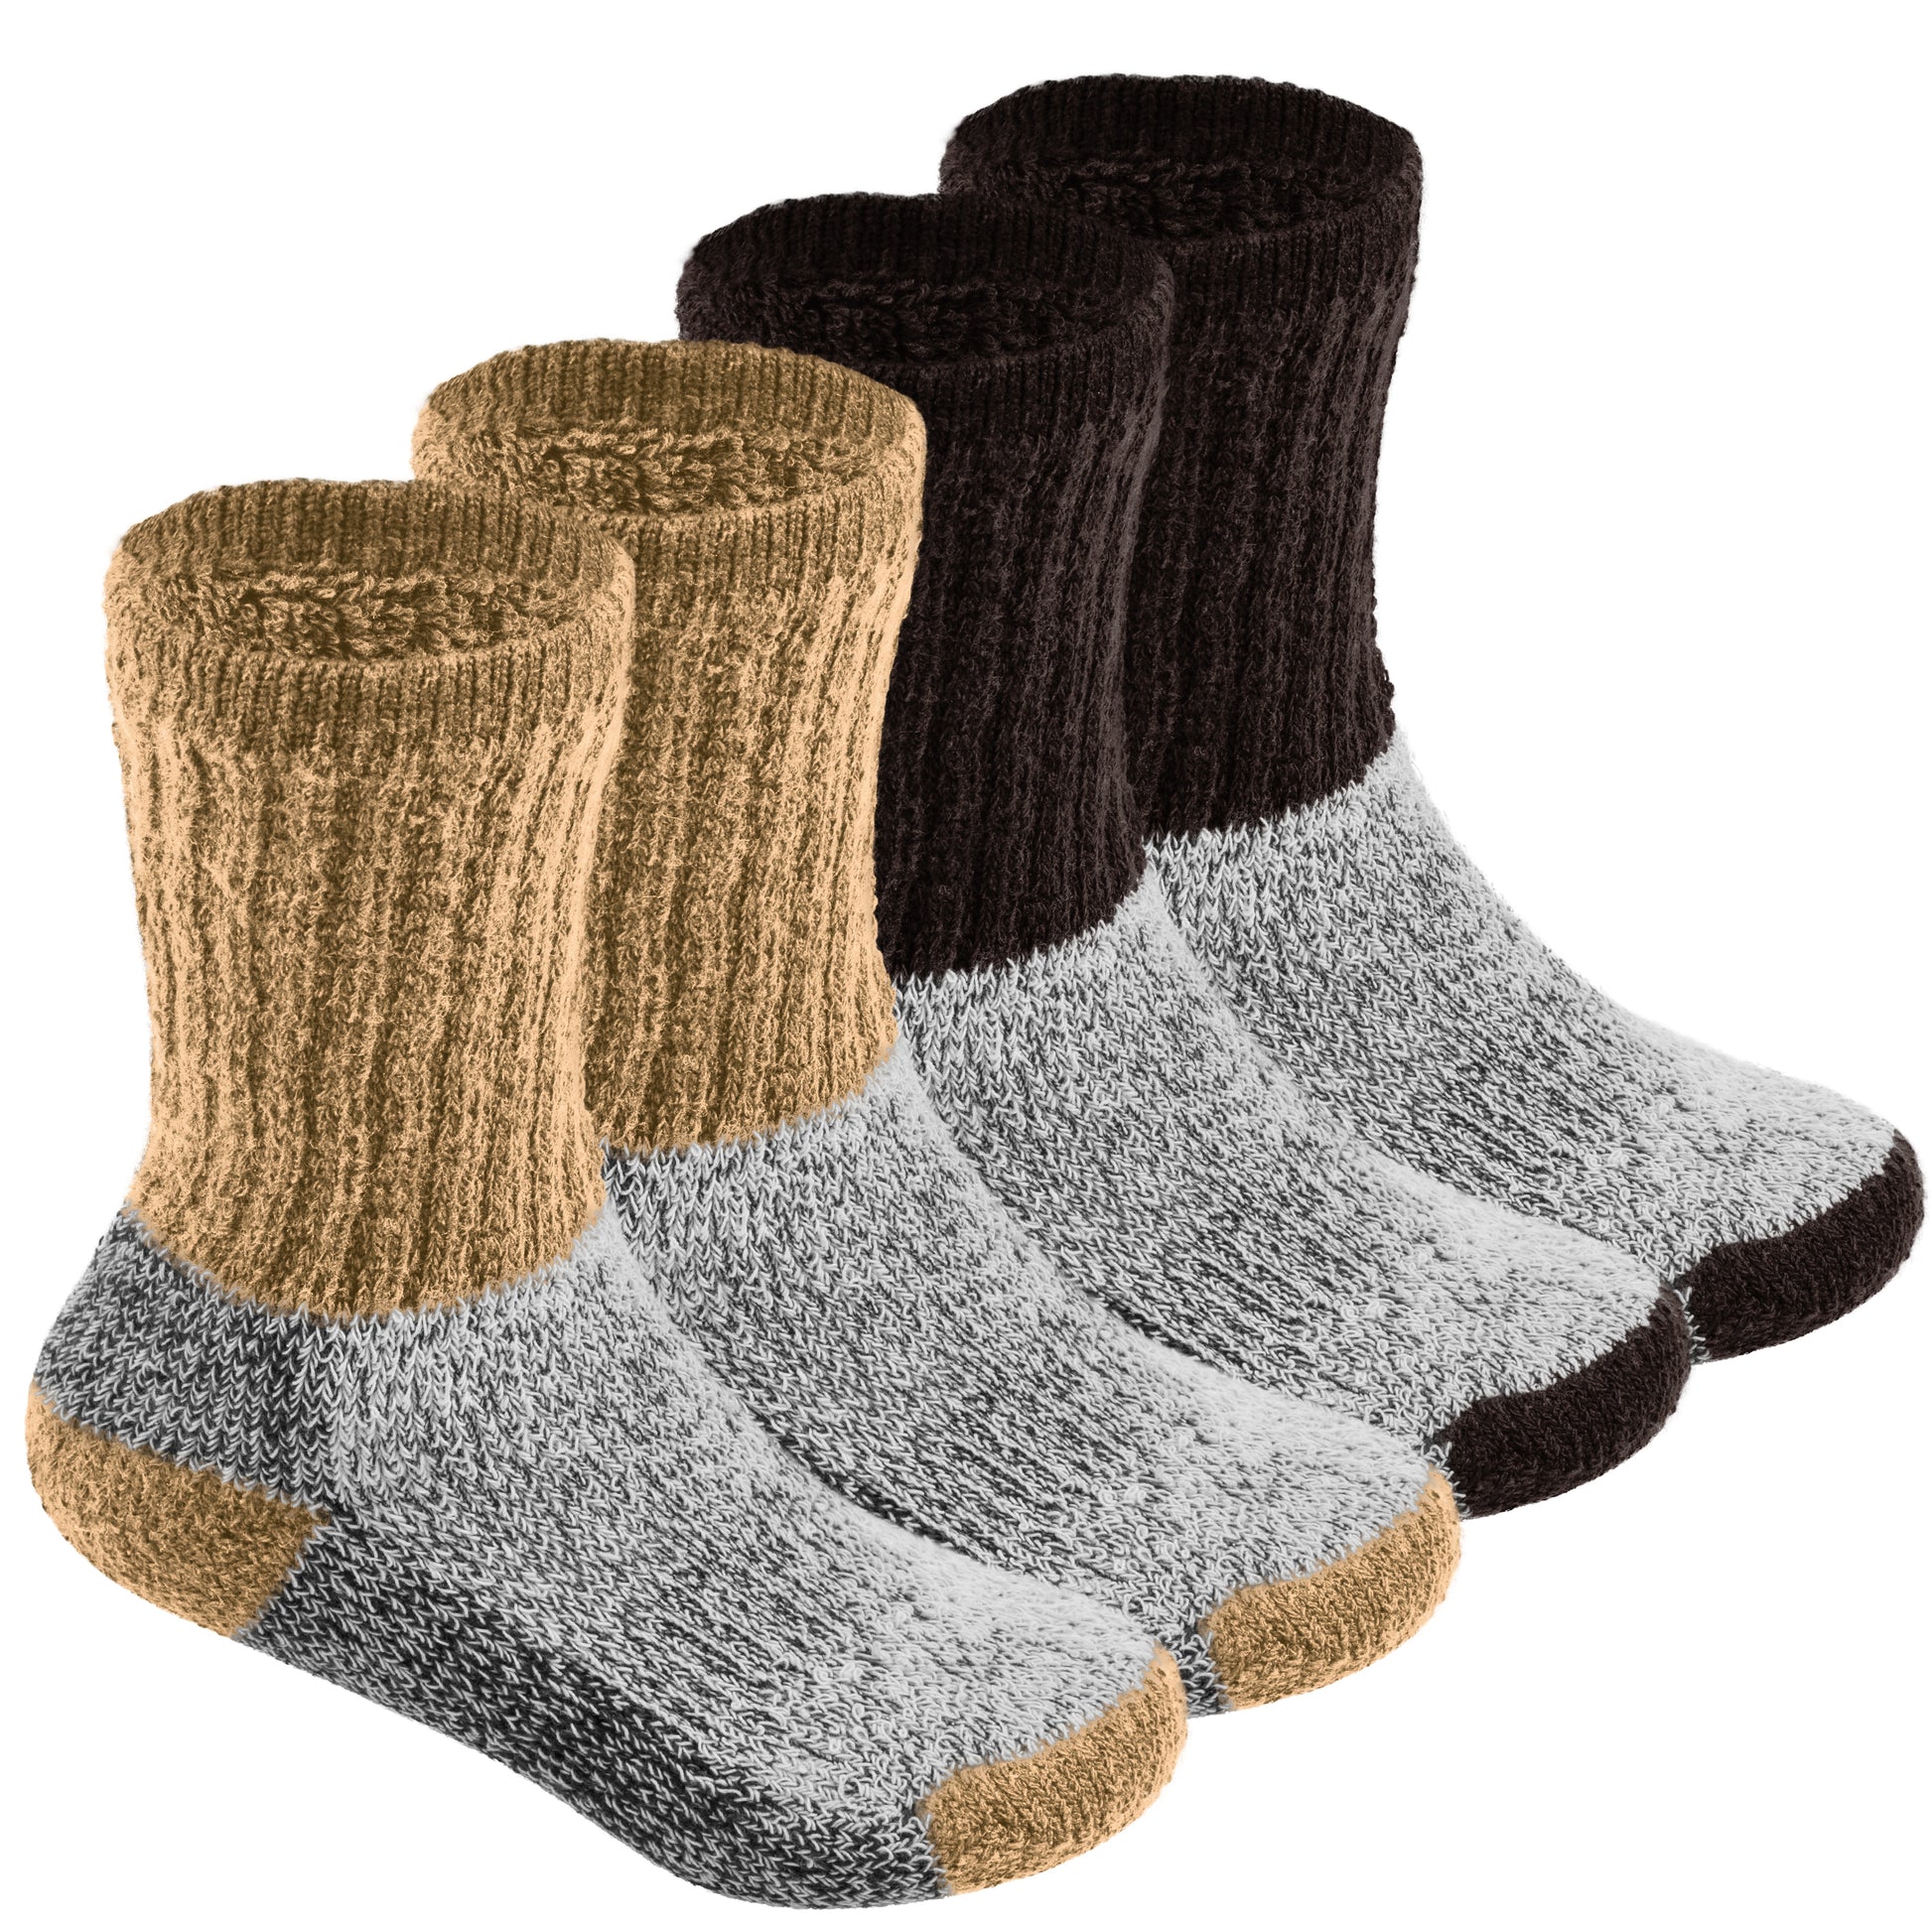 Thermal Socks for Kids - 2 Pairs – Debra Weitzner